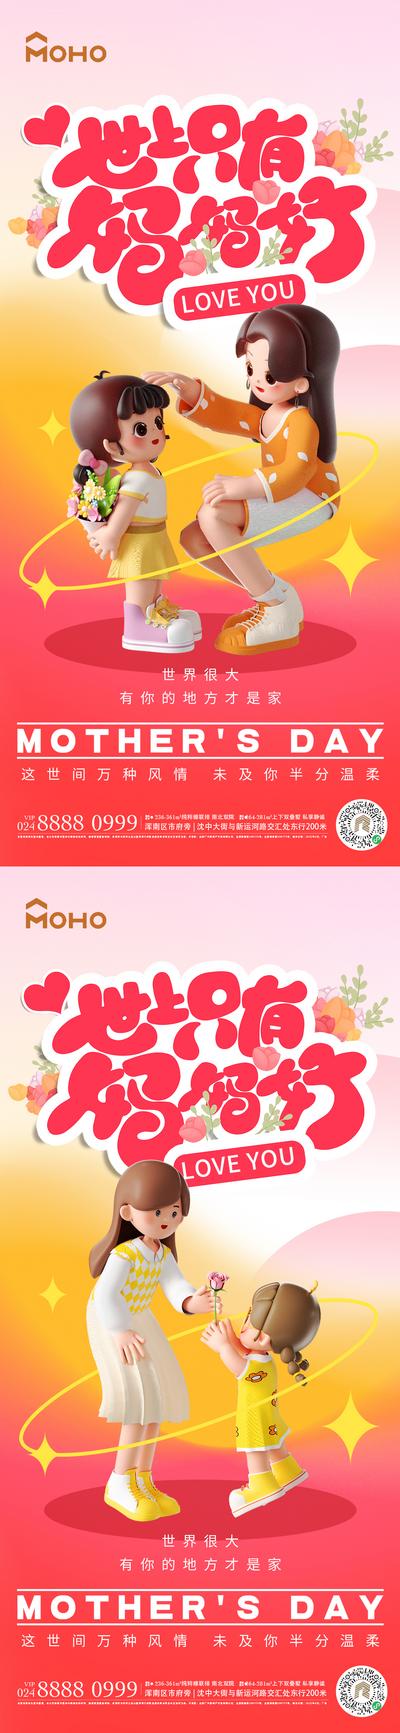 【南门网】广告 海报 节日 母亲节 母亲 母女 母子 爱 母爱 感恩 拥抱 呵护 陪伴 系列